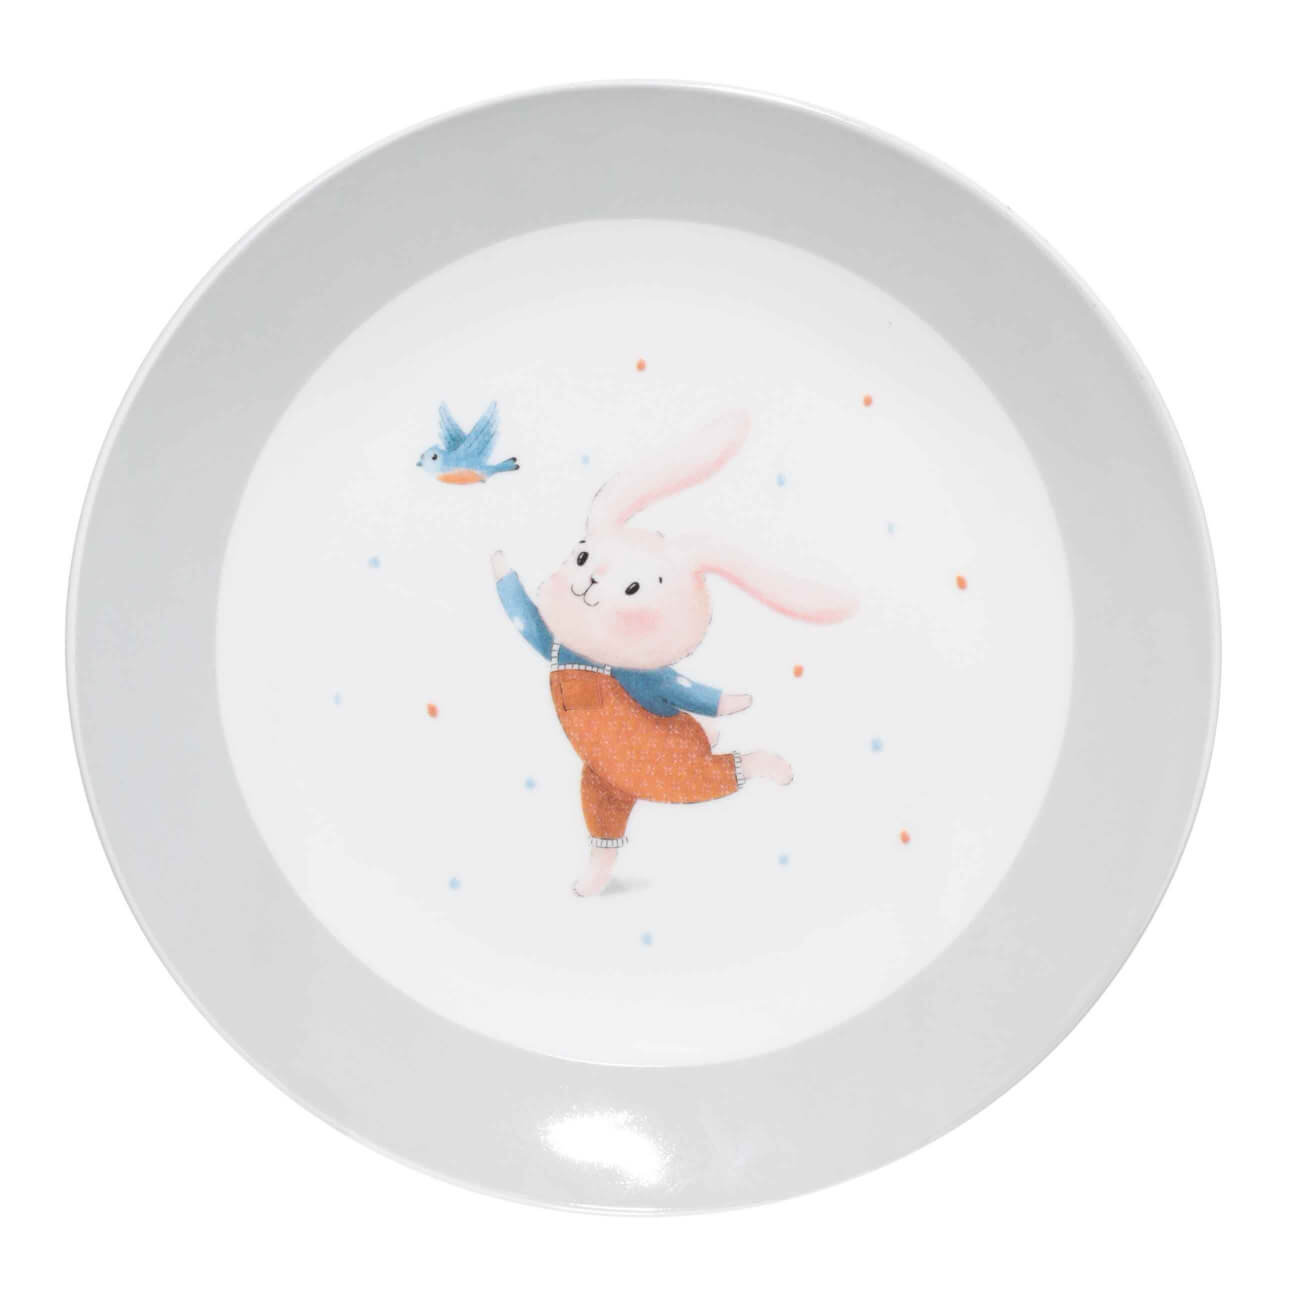 Тарелка закусочная, детская, 19 см, фарфор N, бело-серая, Кролик с птицей, Ideas life тарелка закусочная easy life magma 22х19 см